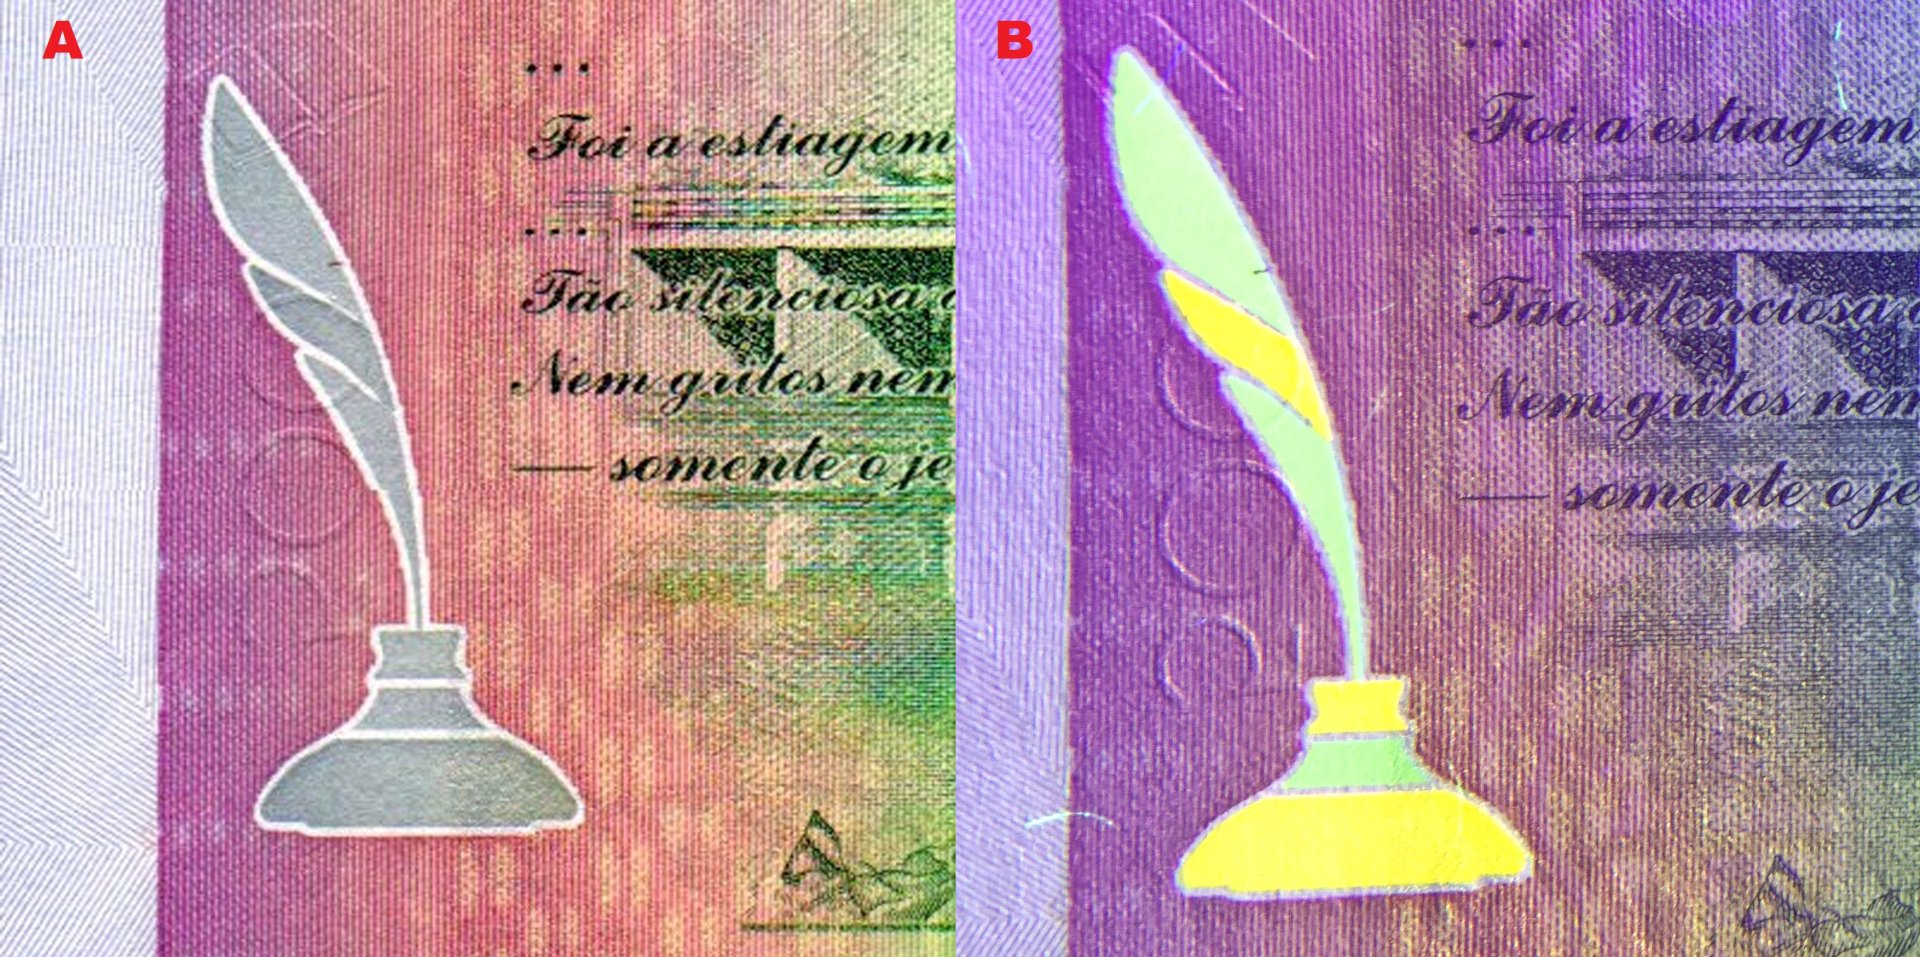 Obr. 6 A) Obraz kalamáře v normálním světle B) změna barev při UV nasvícení obrazu